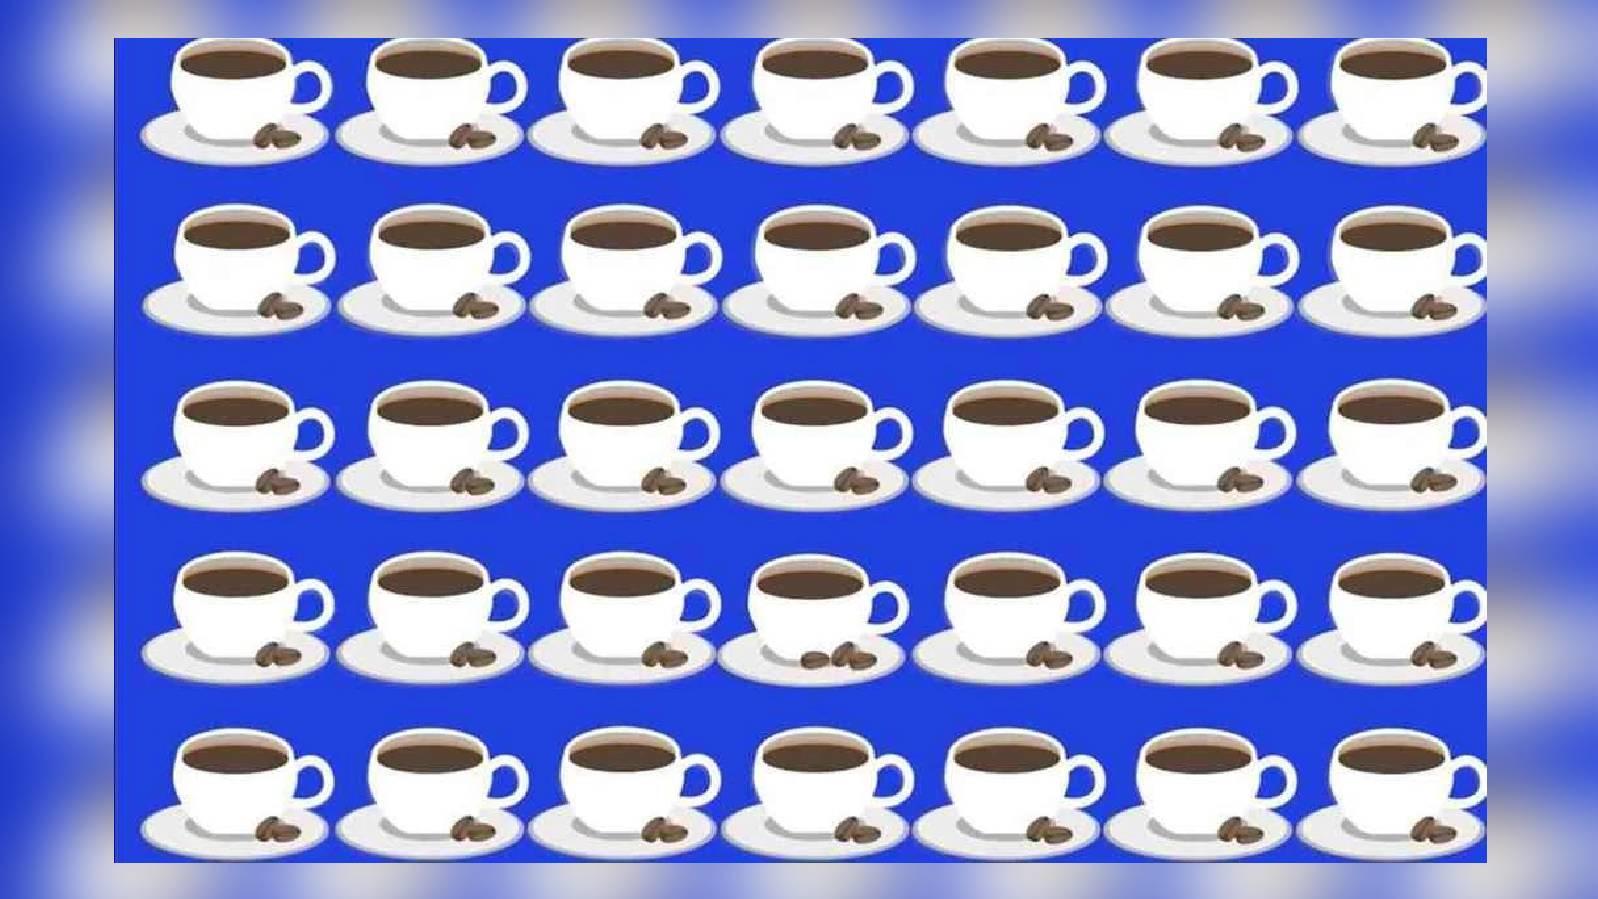 Suchbild: Durchblick mit Koffein! Finden Sie die Kaffeetasse, die anders  ist?